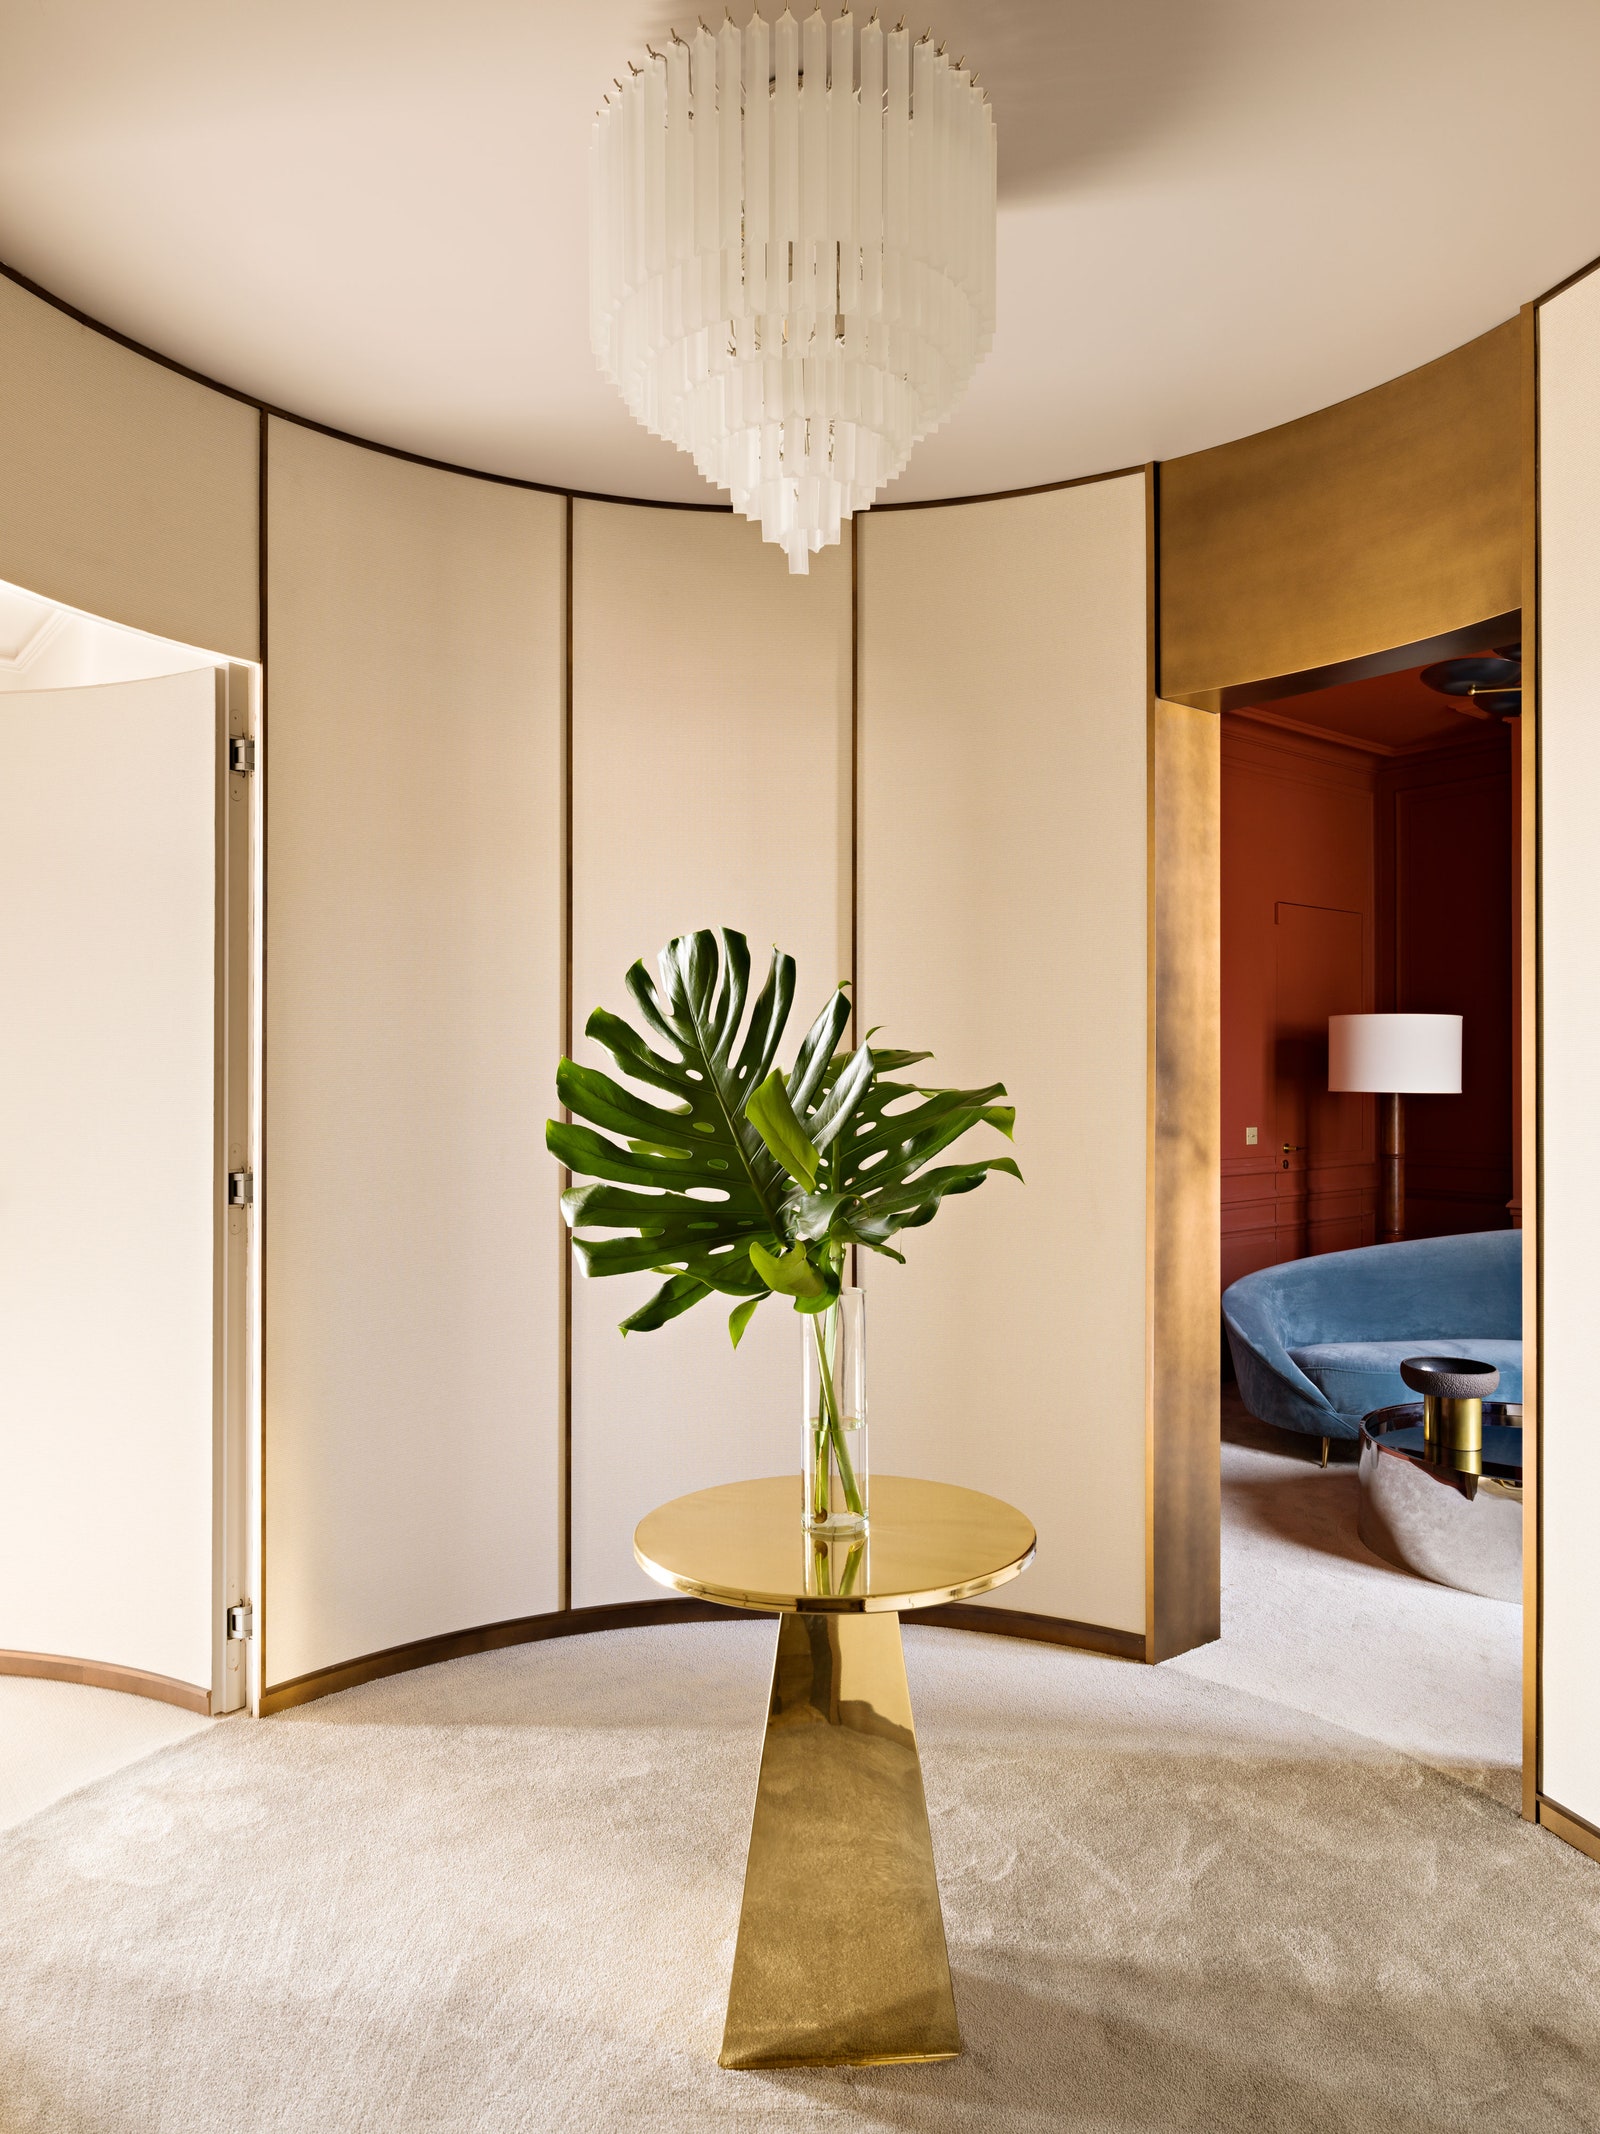 Овальный холл откуда можно пройти в гостевые спальни. Столик из полированной латуни Pierre Gonalons люстра Eichholtz.